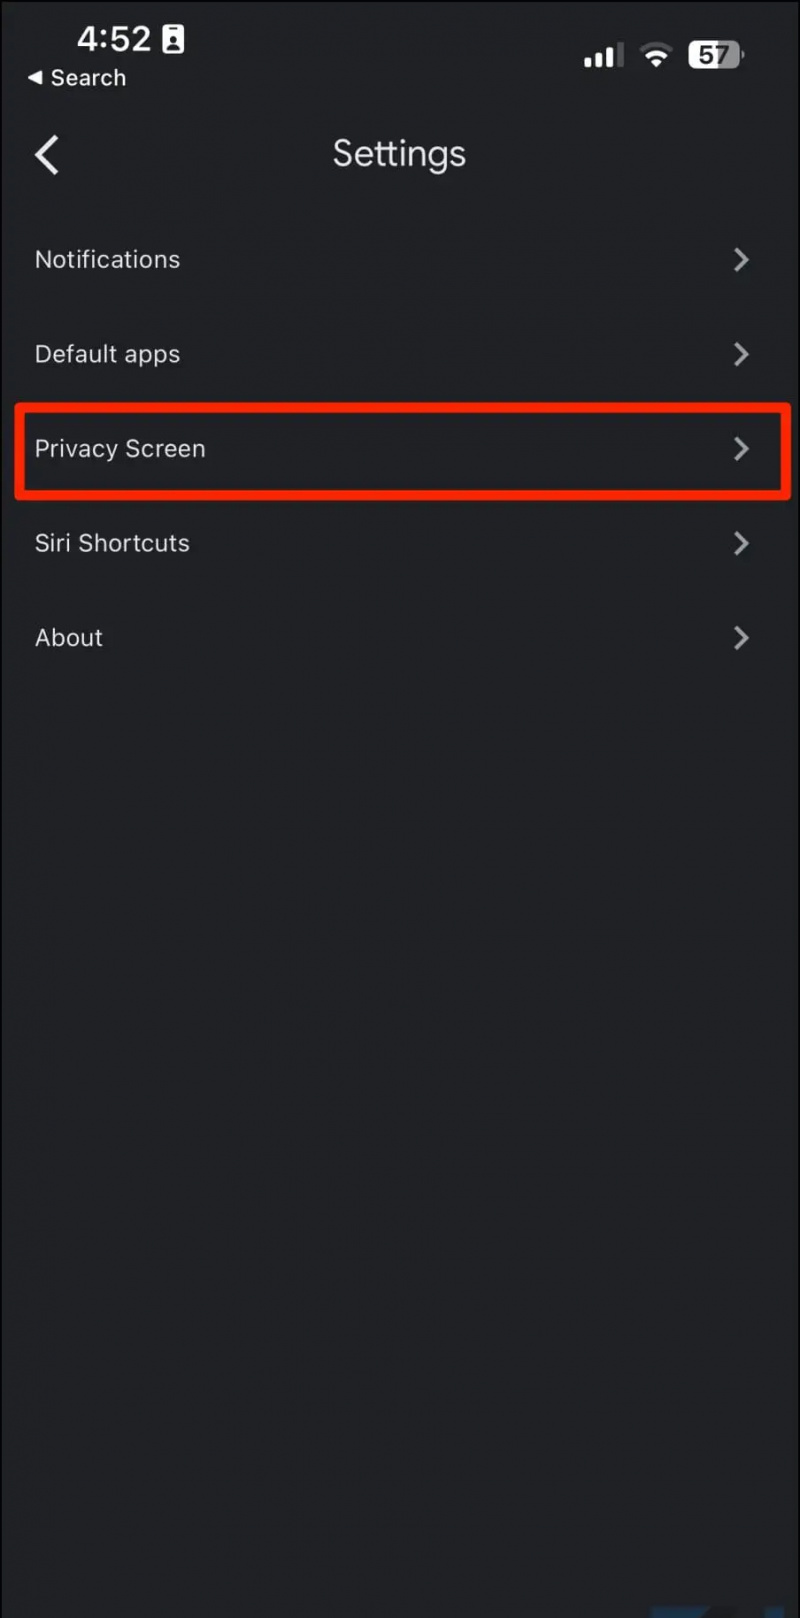   Drive iOS'ta Gizlilik Ekranını Etkinleştirin